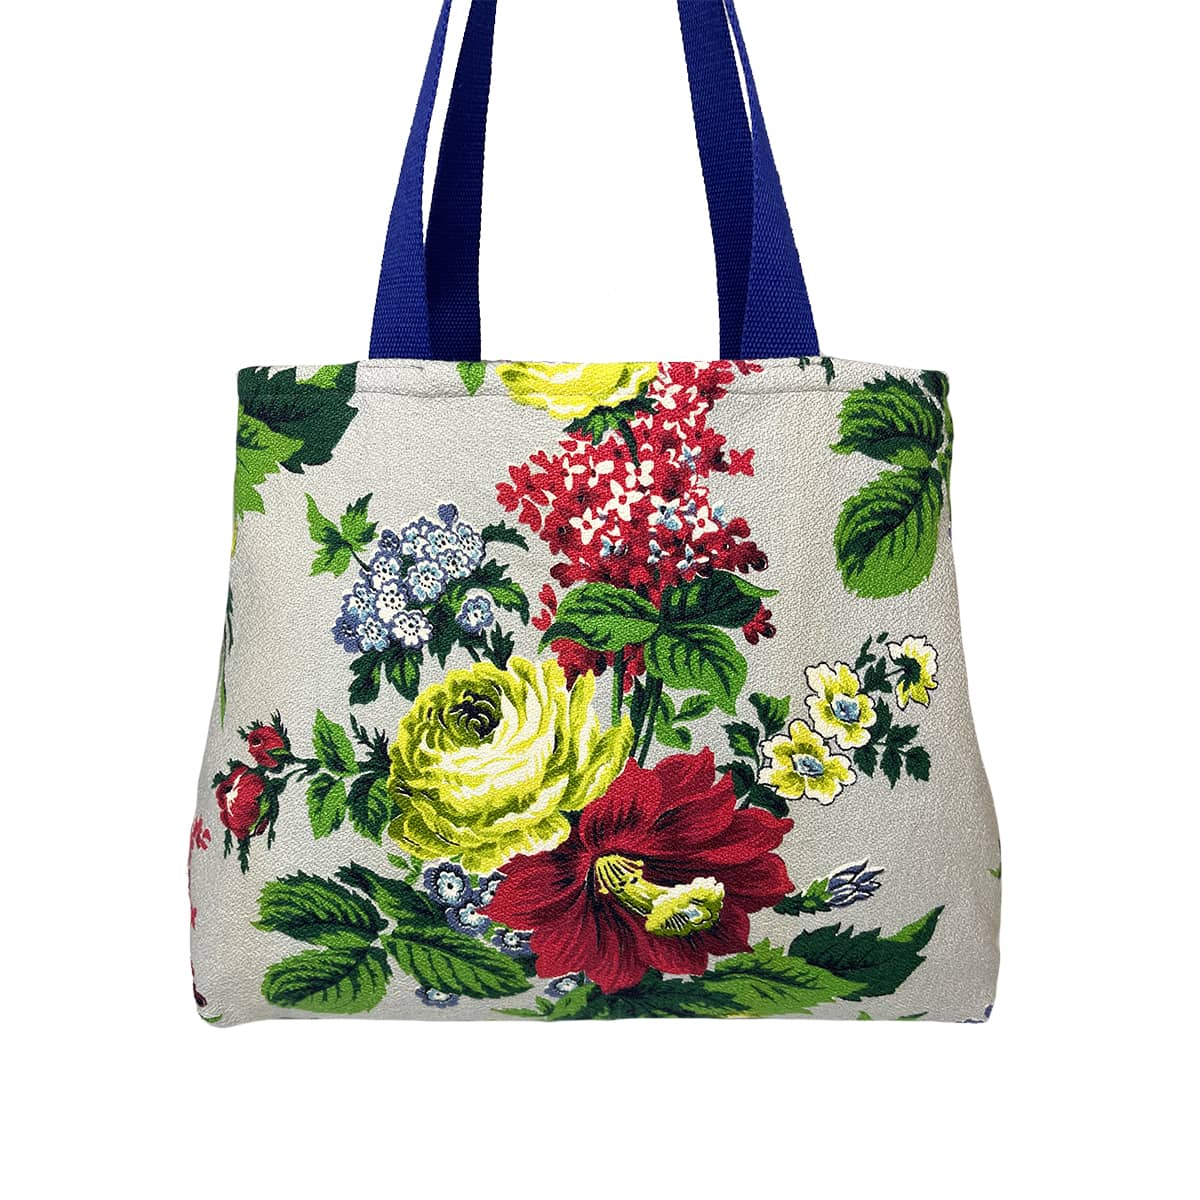 Market Bag – Flower Power